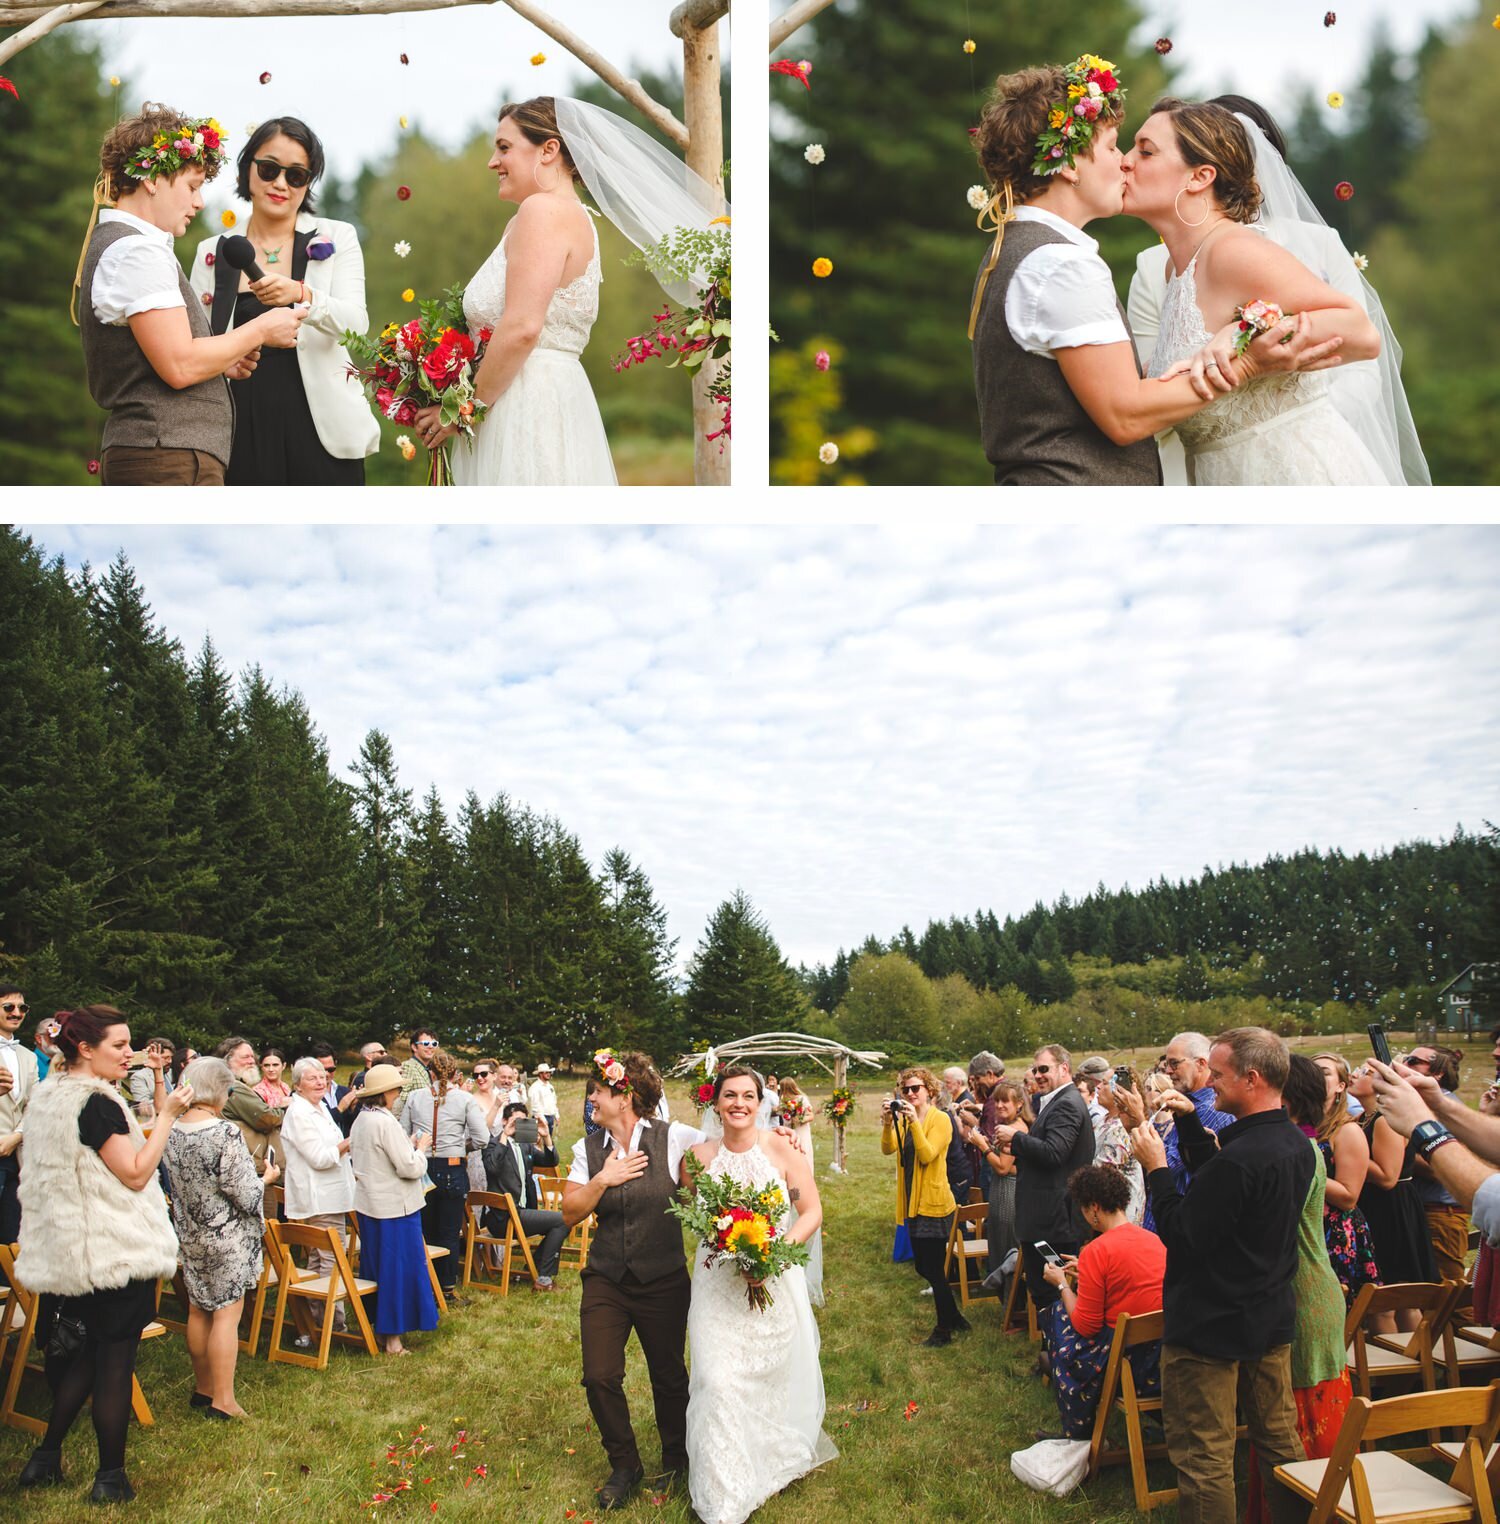 Love Wins Wedding Ceremony by Satya Curcio Photography